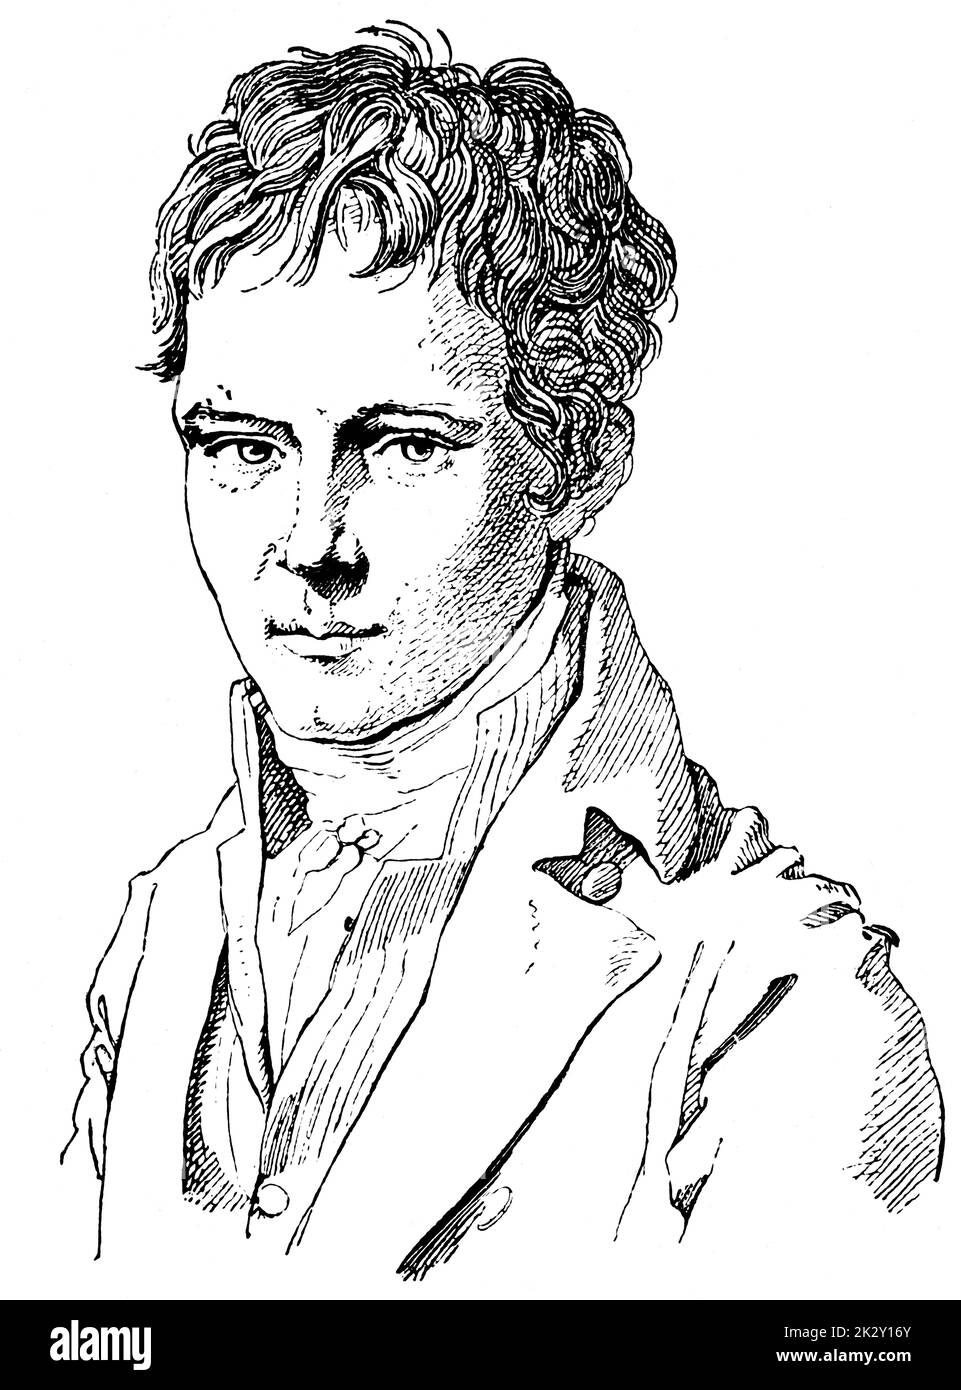 Ritratto di Alexander von Humboldt (gioventù) - un polymath tedesco, geografo, naturalista, esploratore e sostenitore della filosofia e della scienza romantiche. Illustrazione del 19 ° secolo. Sfondo bianco. Foto Stock